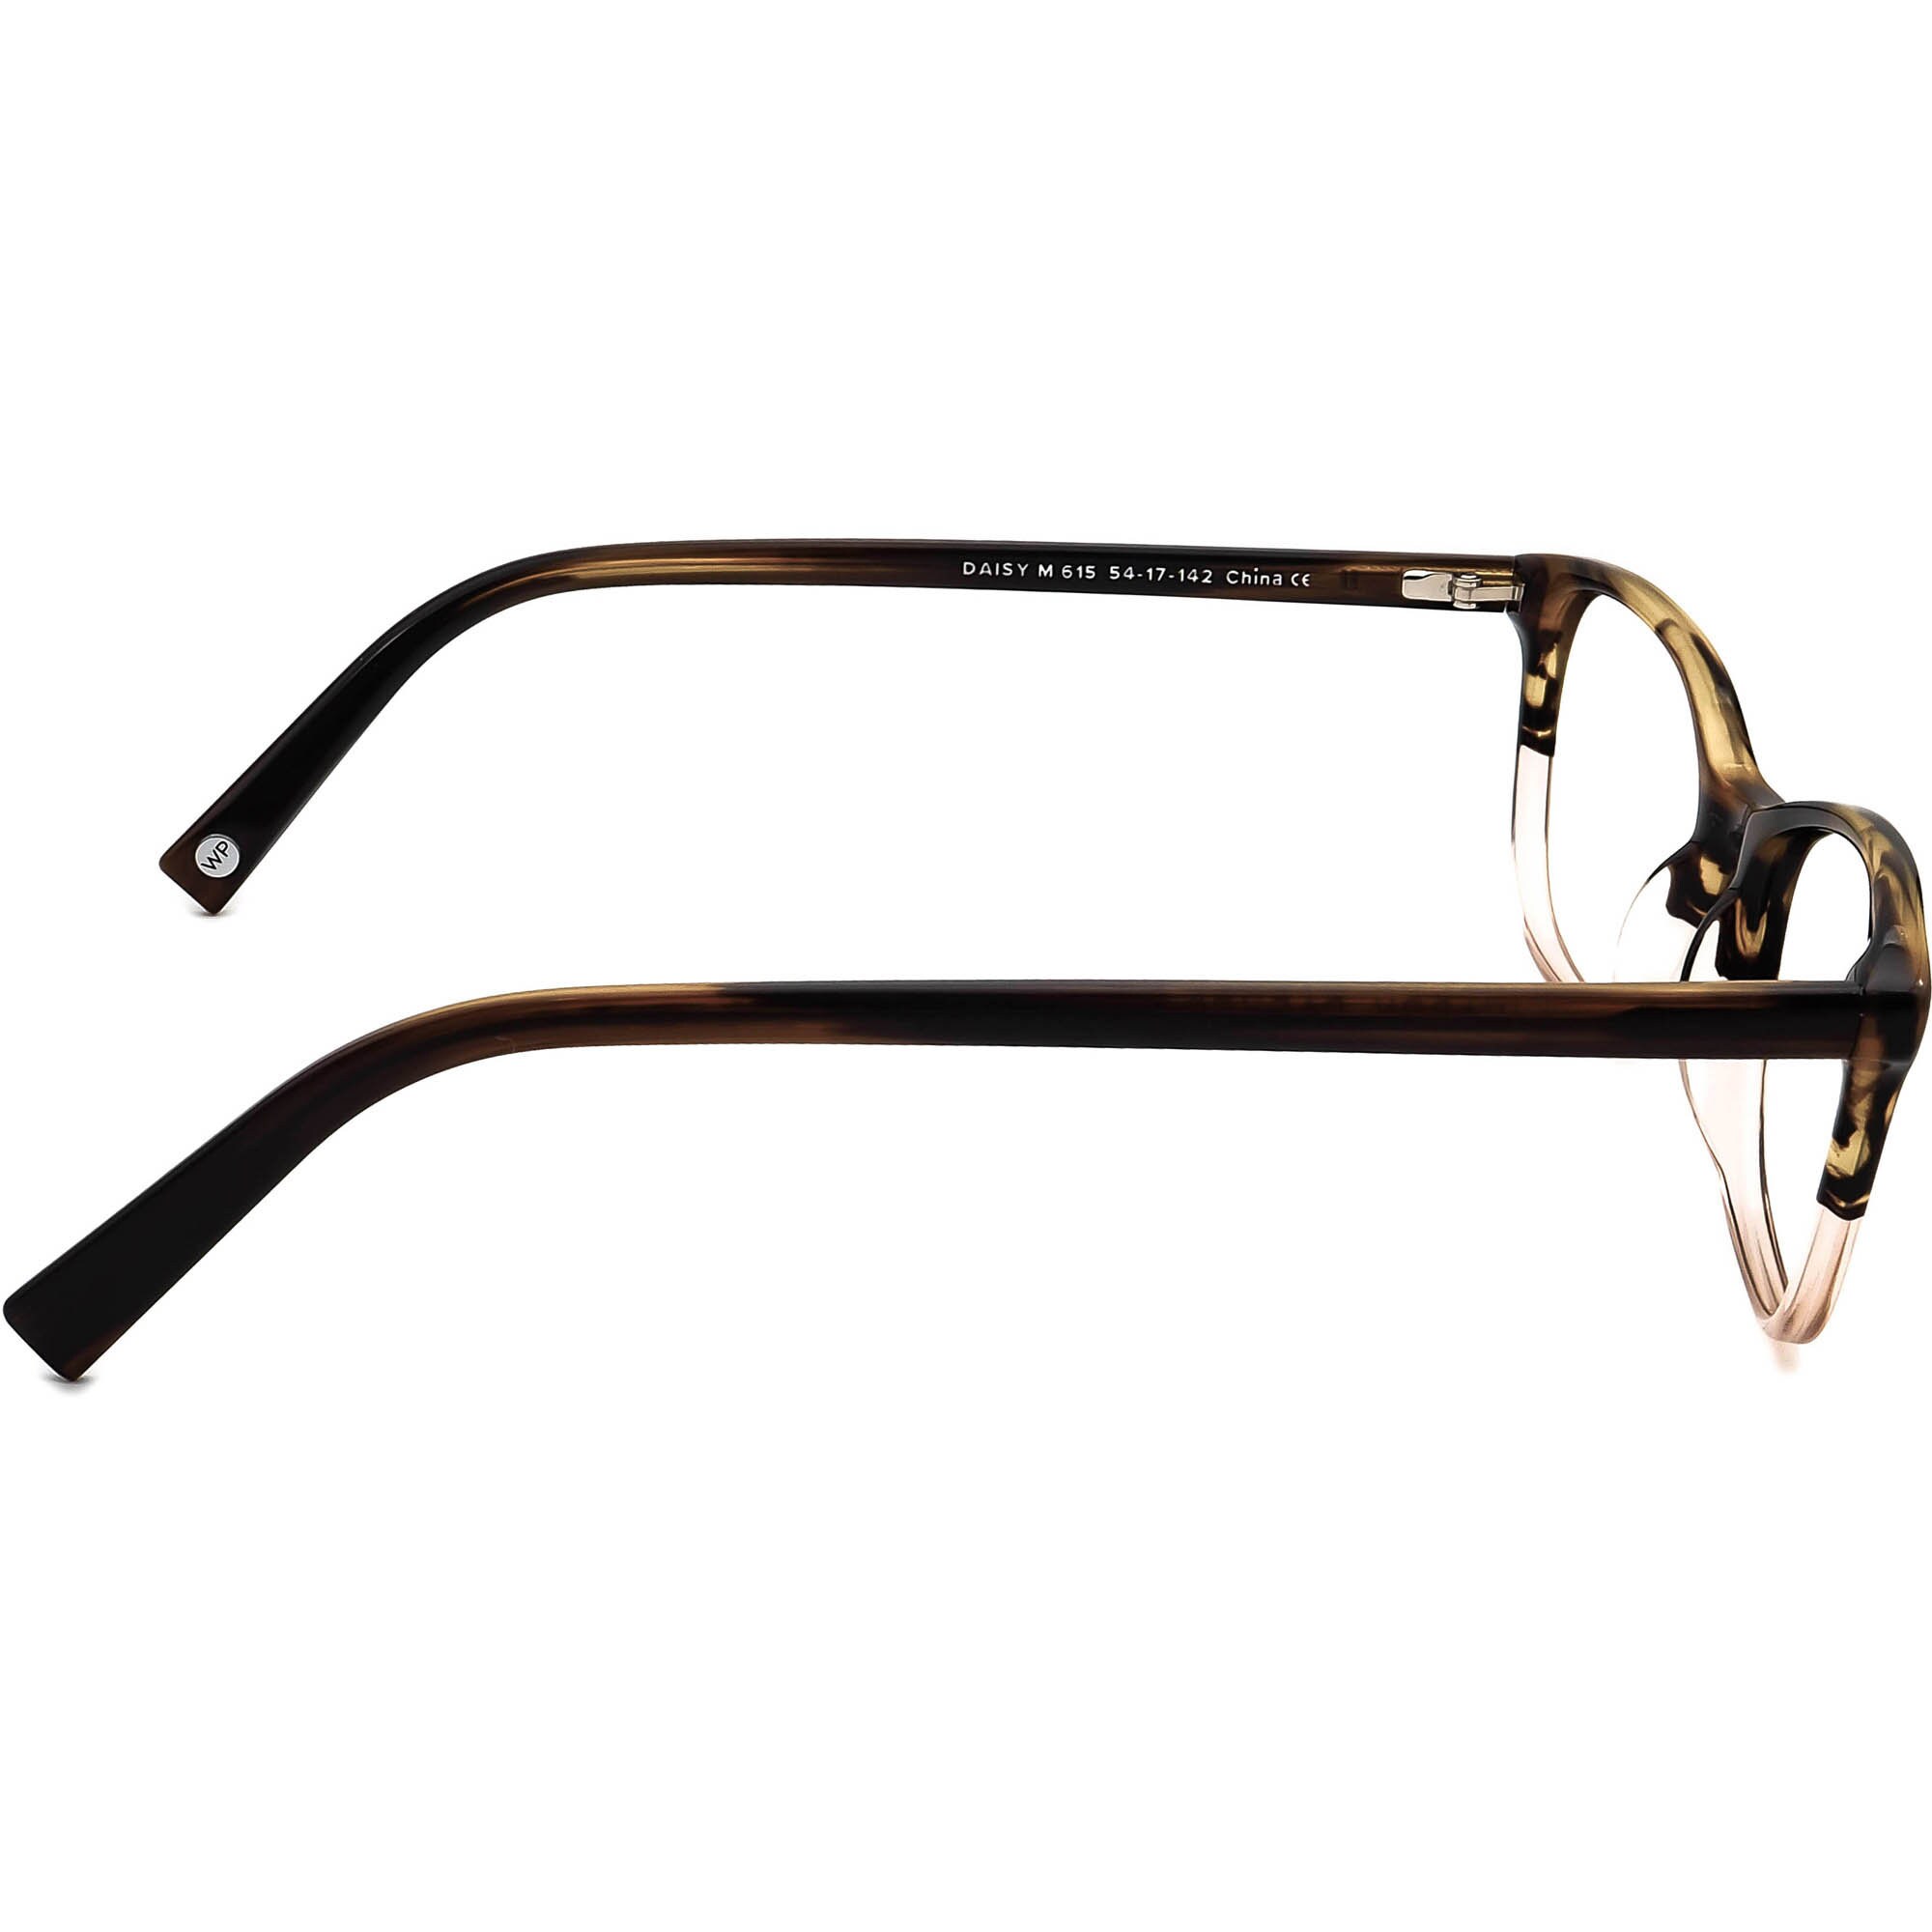 Warby Parker Women's Eyeglasses Daisy M 615 Tortoise&clear 